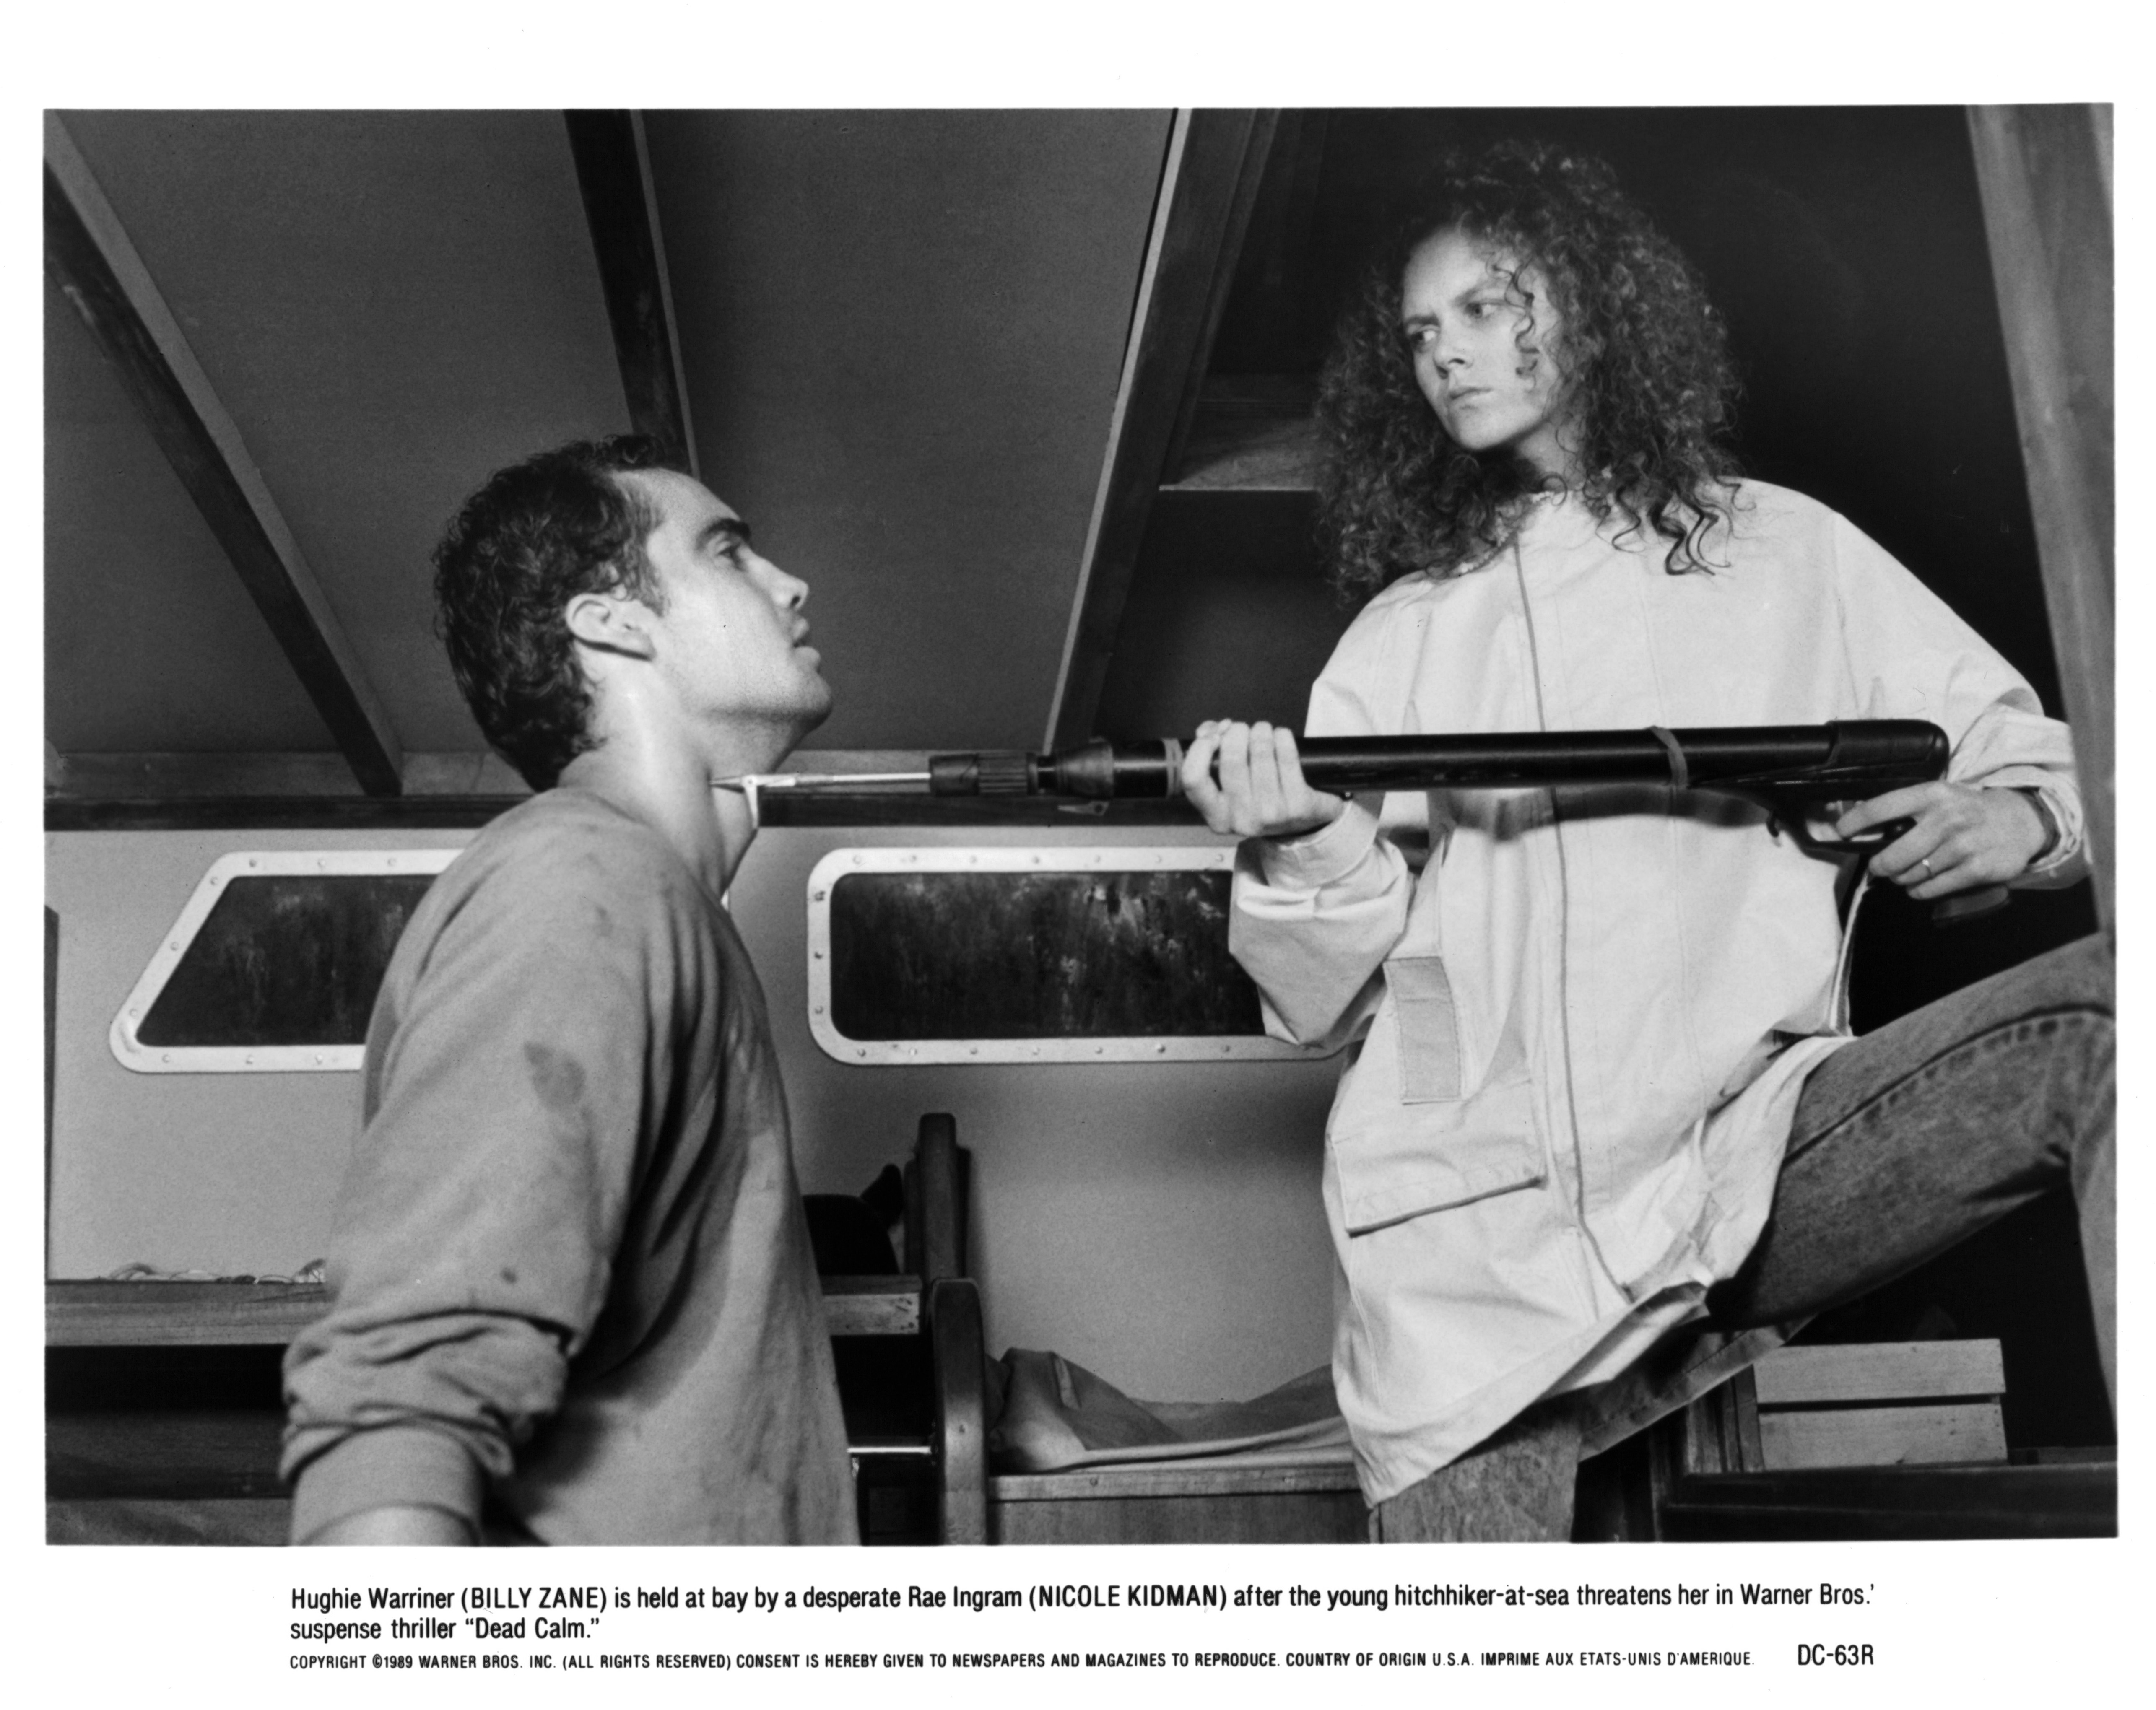 Billy Zane et Nicole Kidman sur le tournage du film "Dead Calm" de Warner Bros, vers 1989. | Source : Getty Images